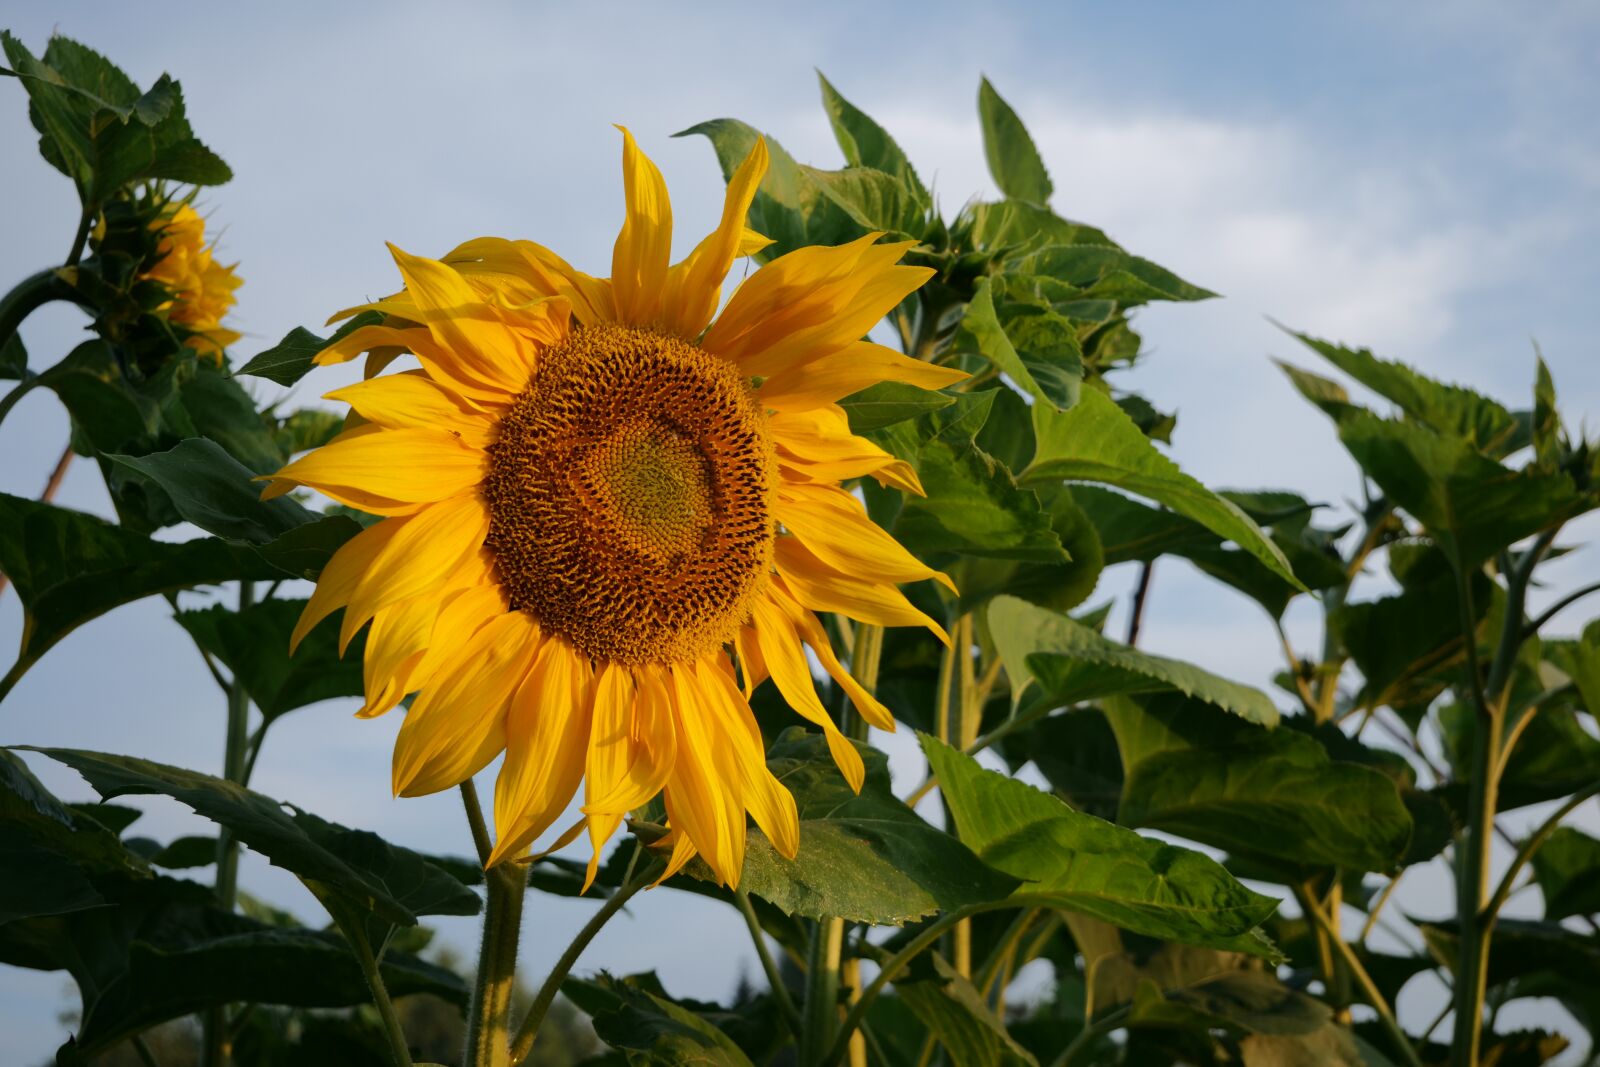 Panasonic Lumix DC-G9 sample photo. Sunflower, flower, yellow flower photography